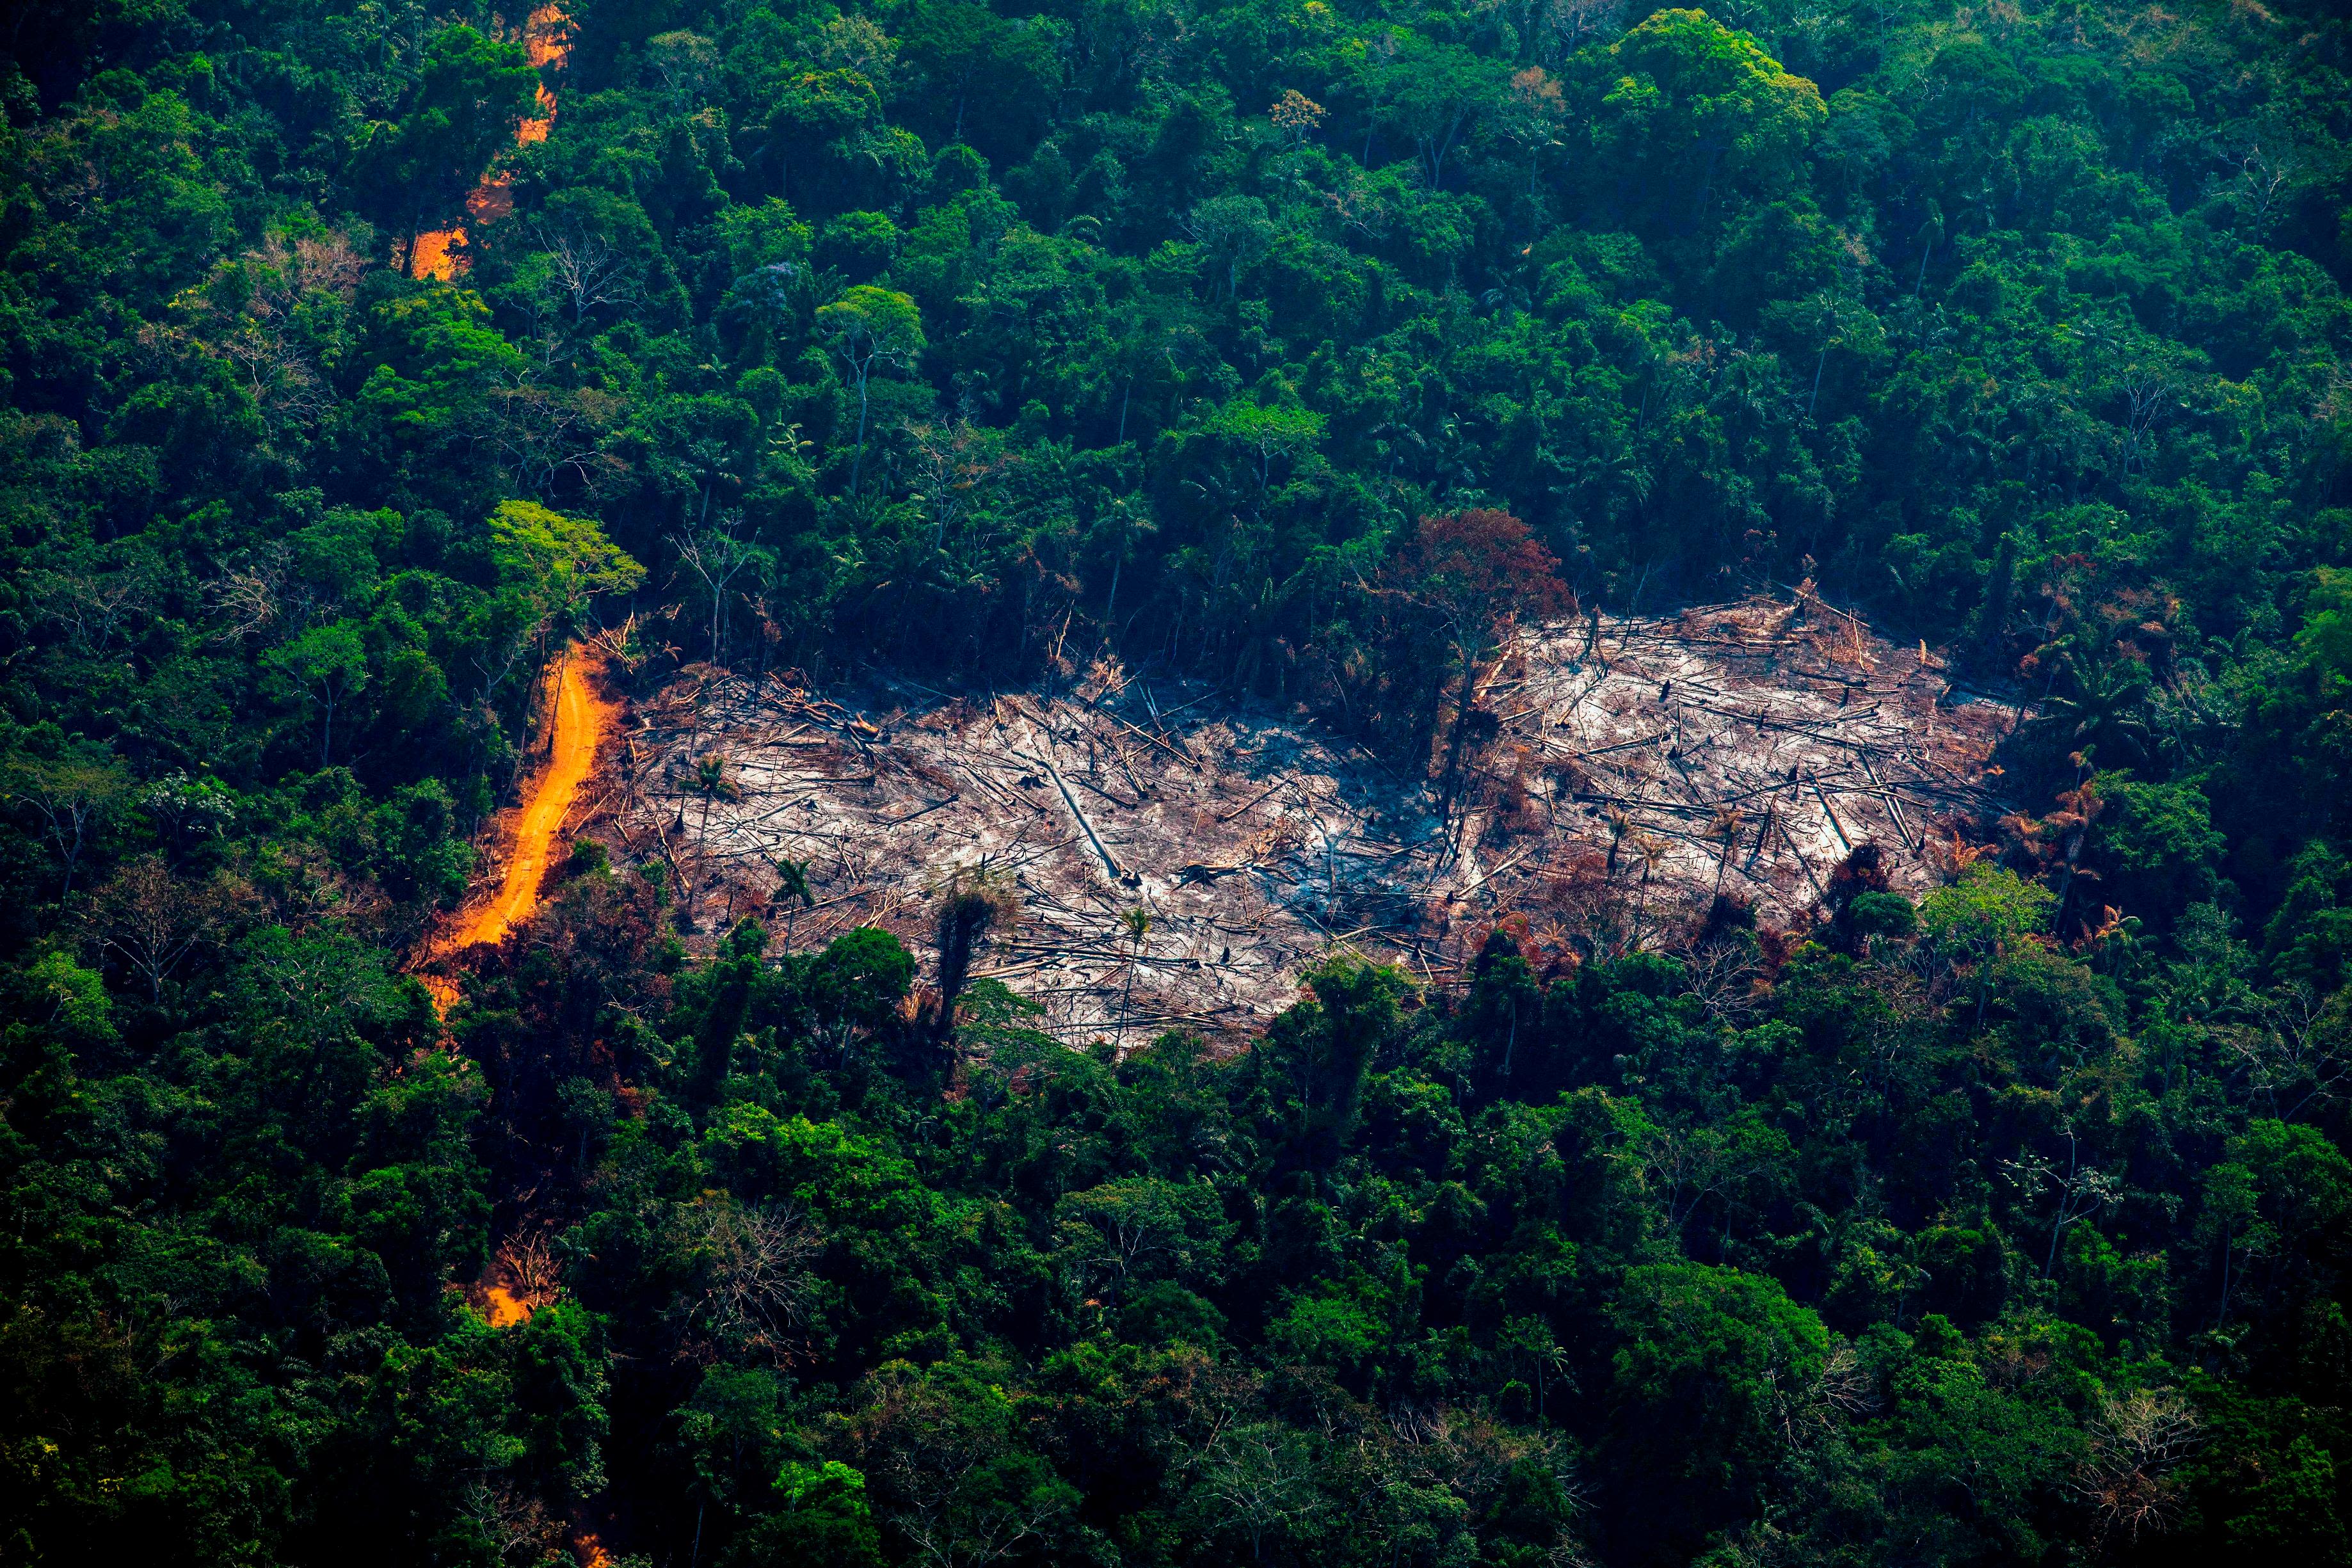 Brazil: Criminal Networks Target Rainforest Defenders